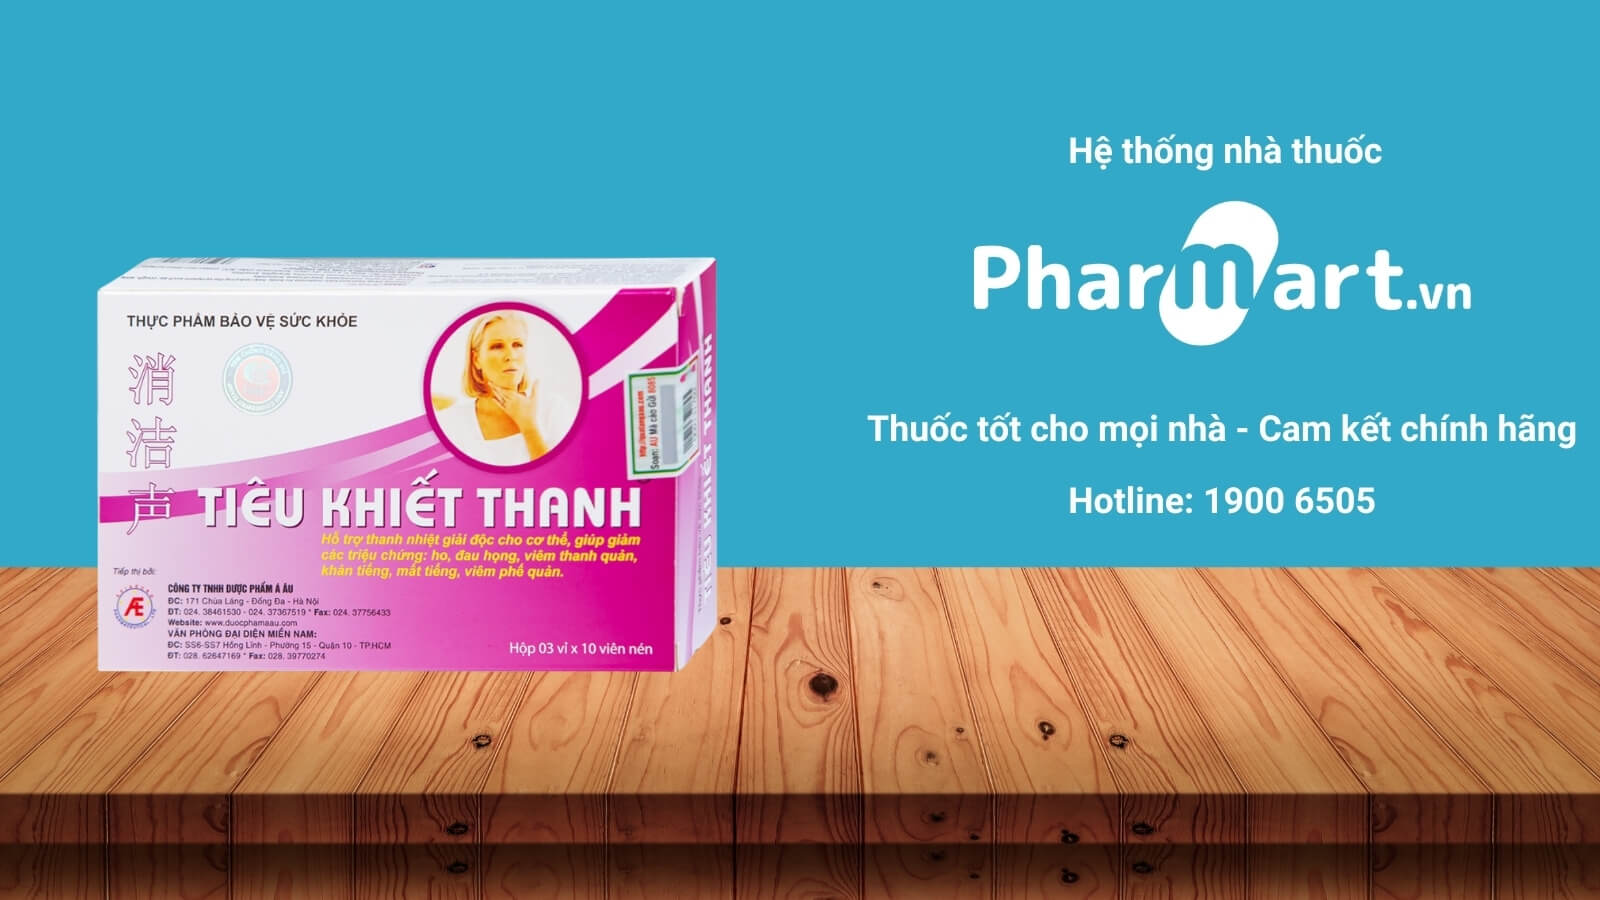 Mua Tiêu Khiết Thanh chính hãng tại Pharmart.vn